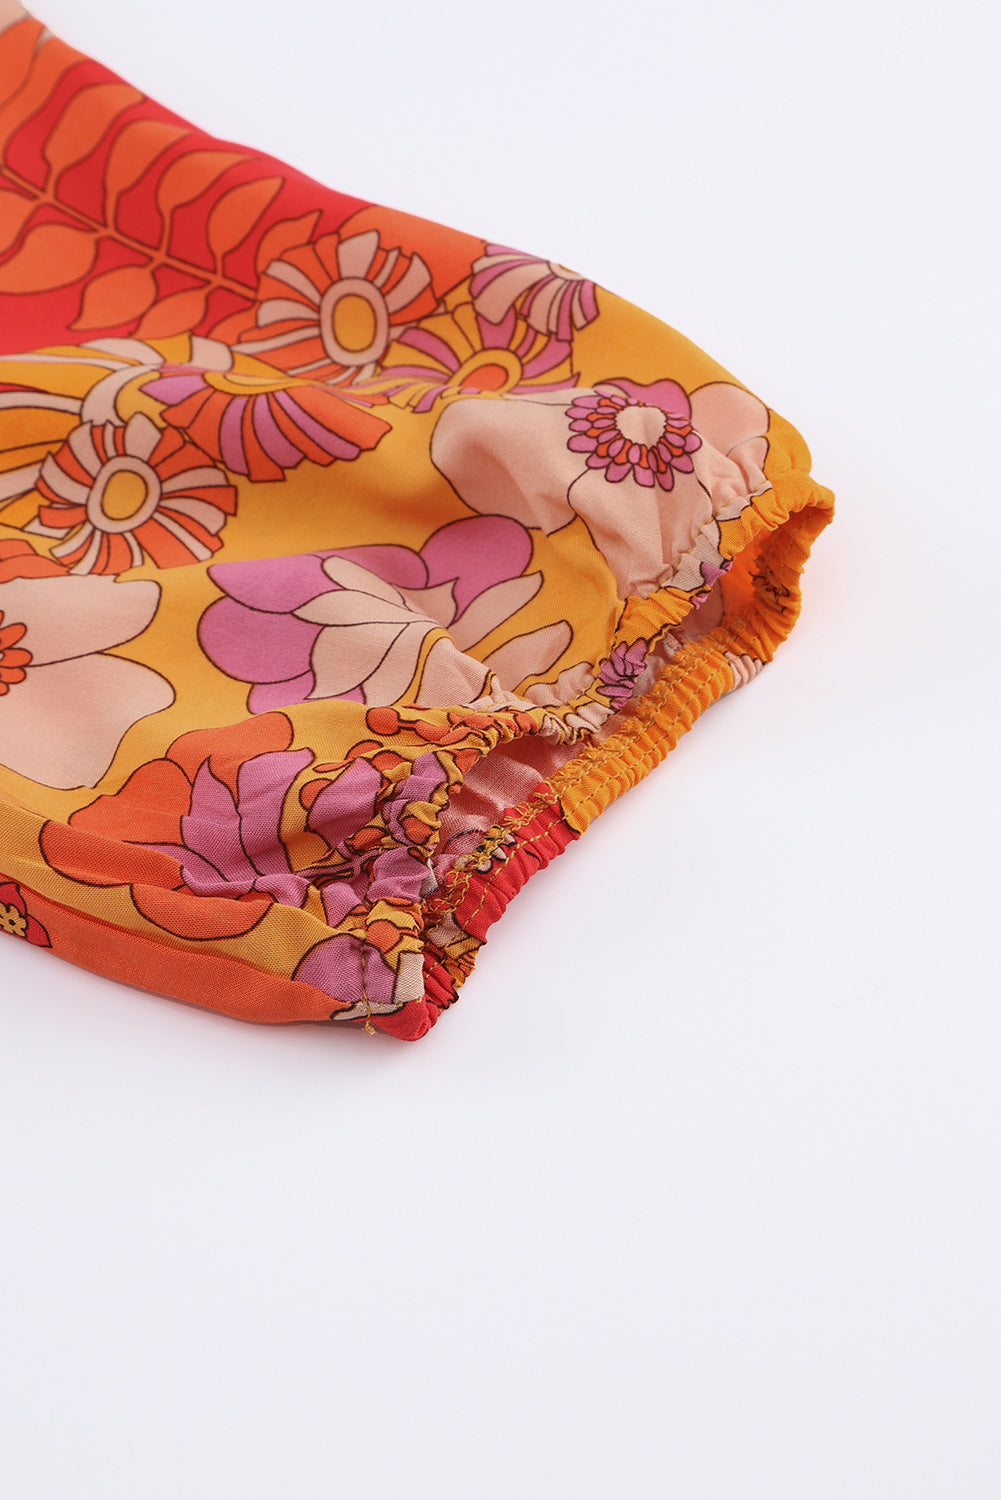 Robe longue orange bohème florale à taille smockée avec fente